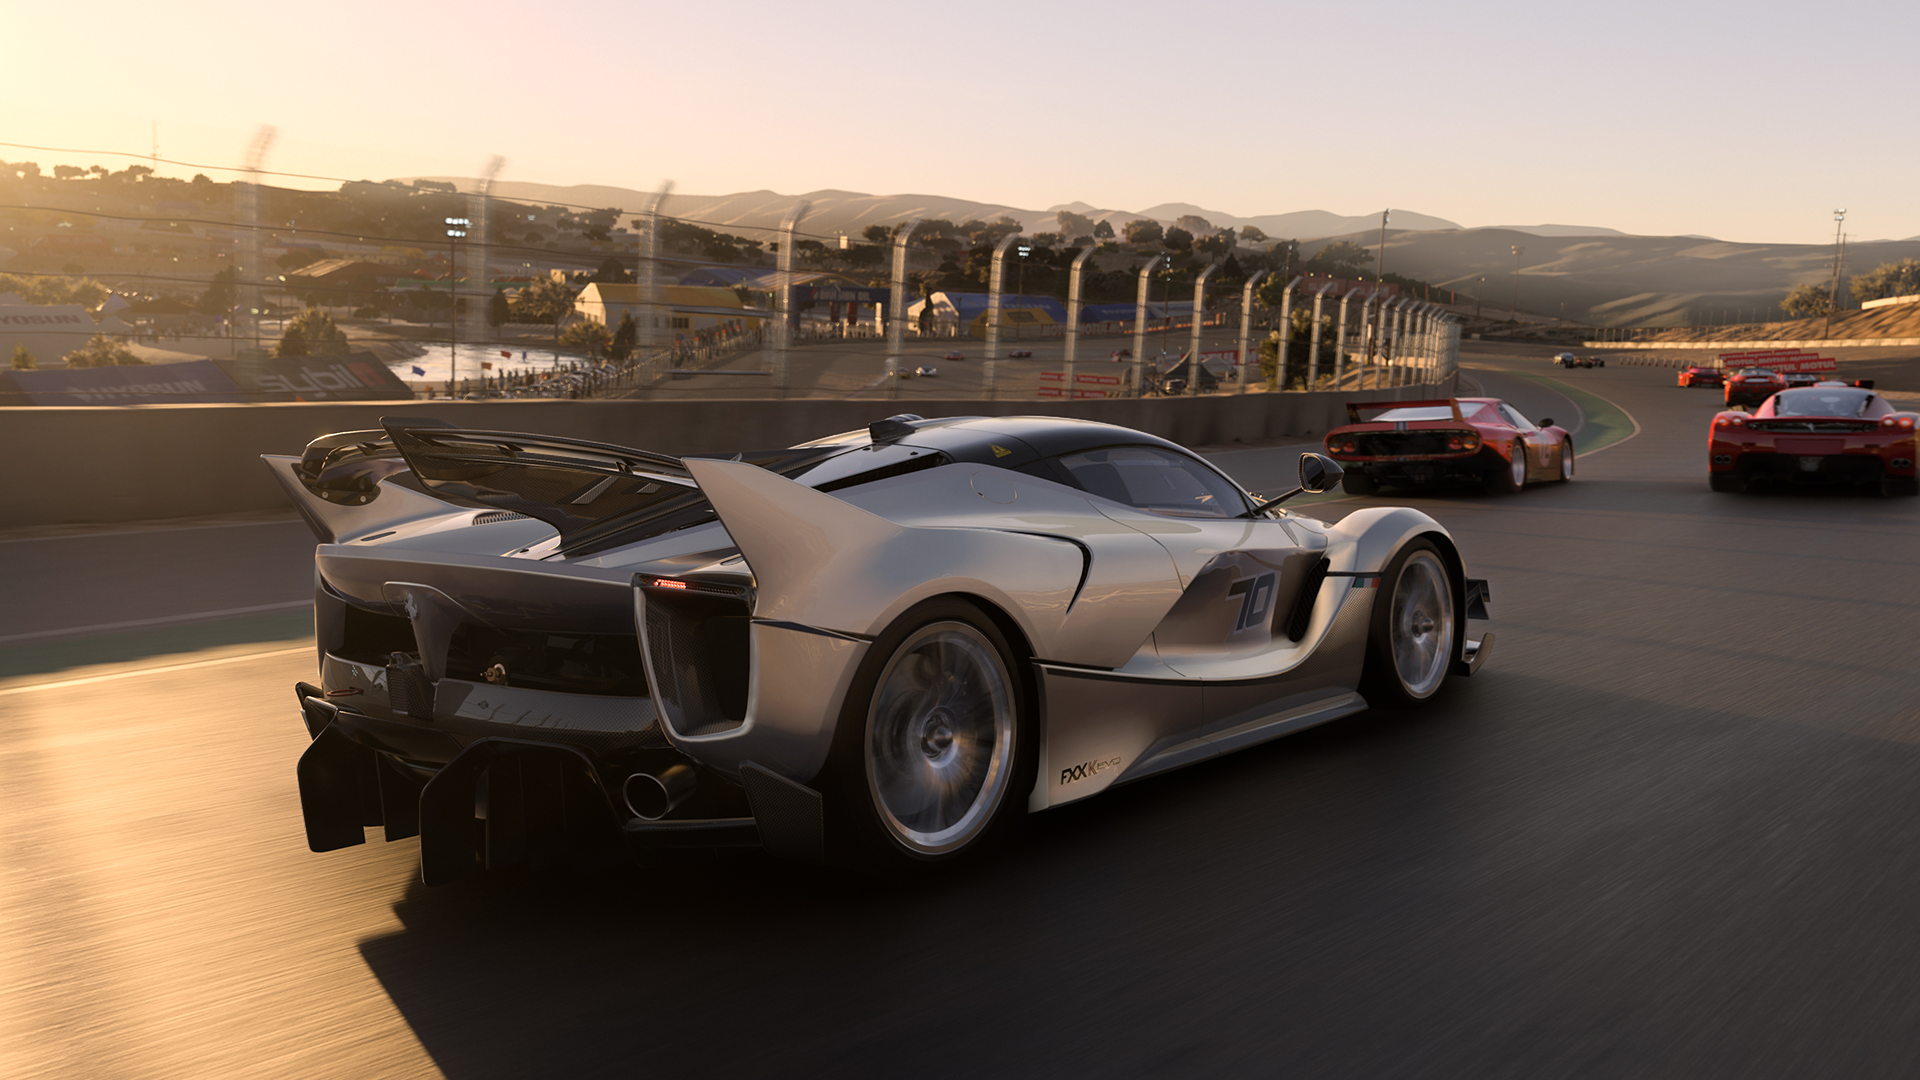 Forza Motorsports é o lugar competitivo para se construir